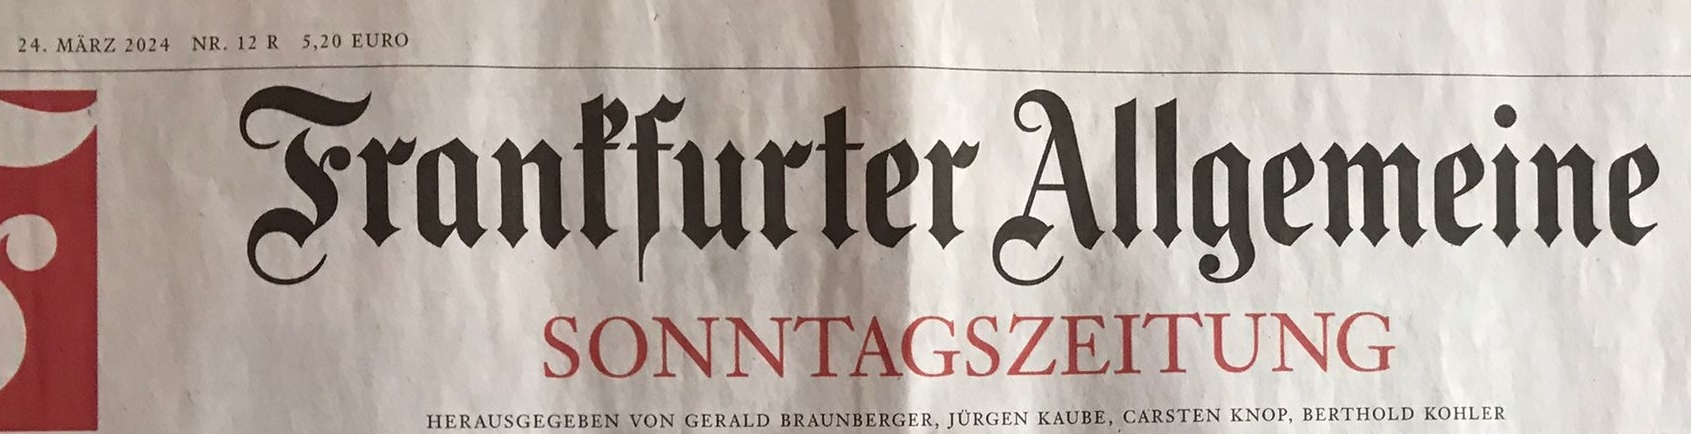 2024-03-24-frankfurter-allgemeine-print-a